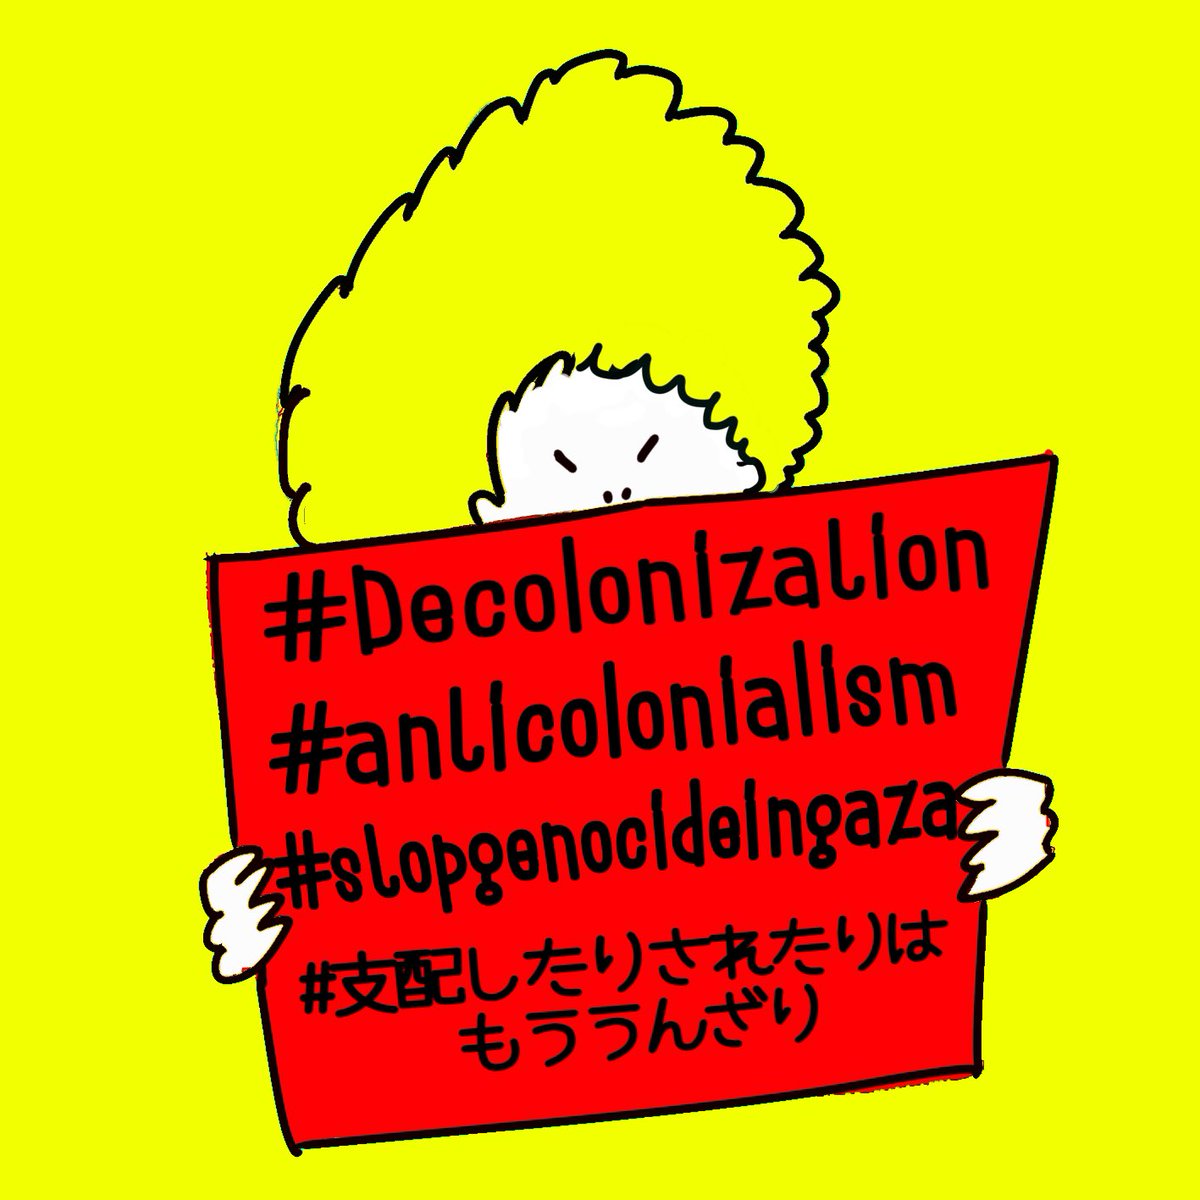 脱植民地化
反植民地主義
支配したりされたりはもううんざり
#decolonization 
#anticolonialism 
#stopgenocideingaza